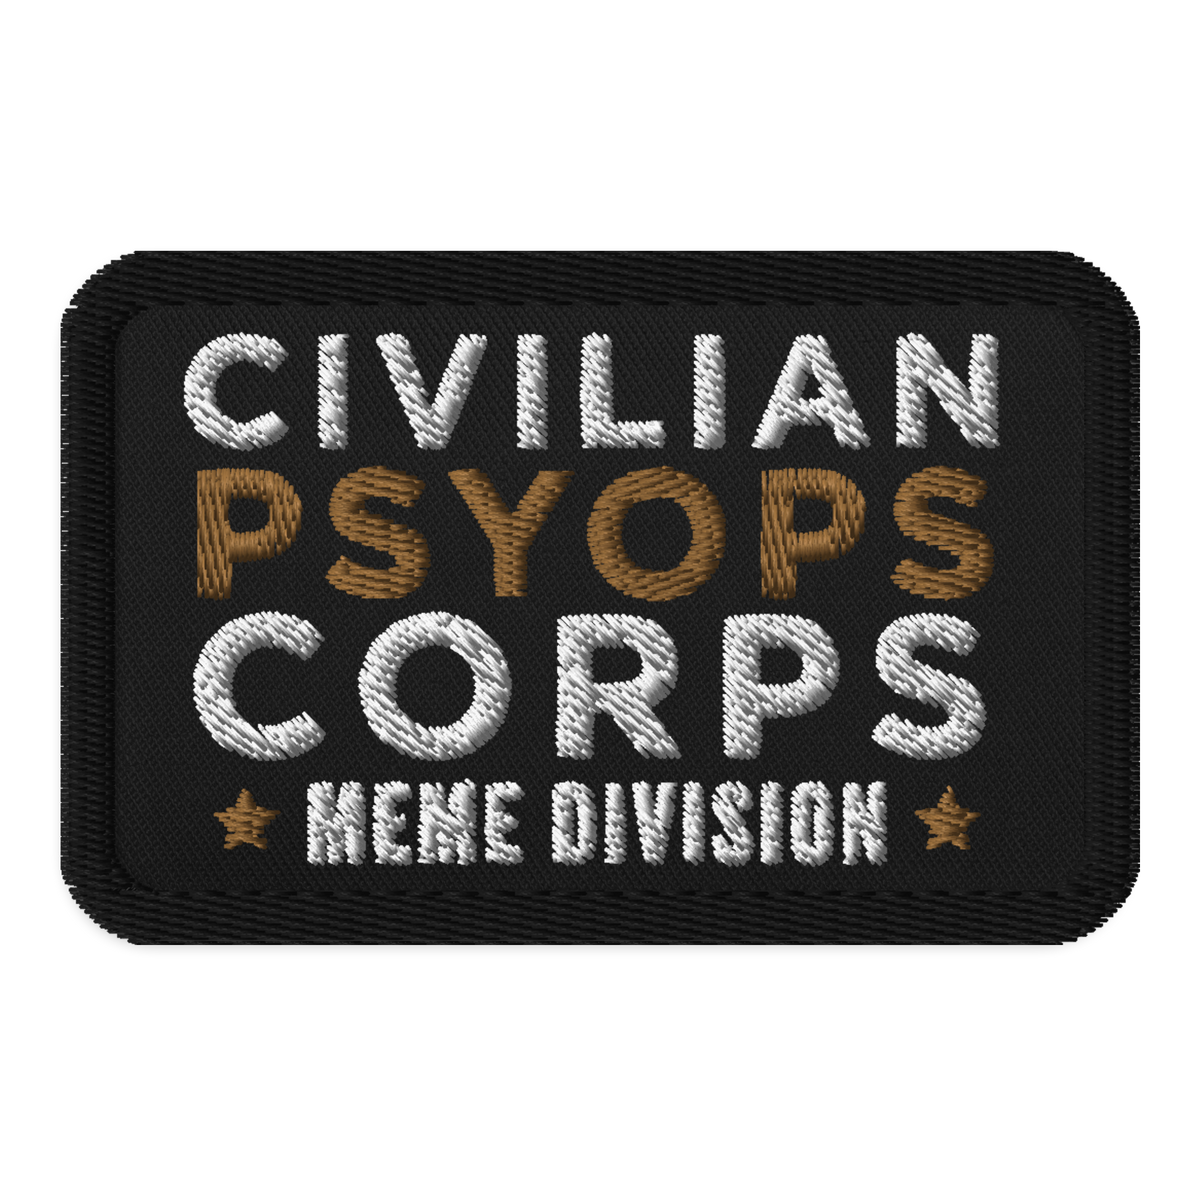 Civilian Psyops Corps Meme Division Morale Patch